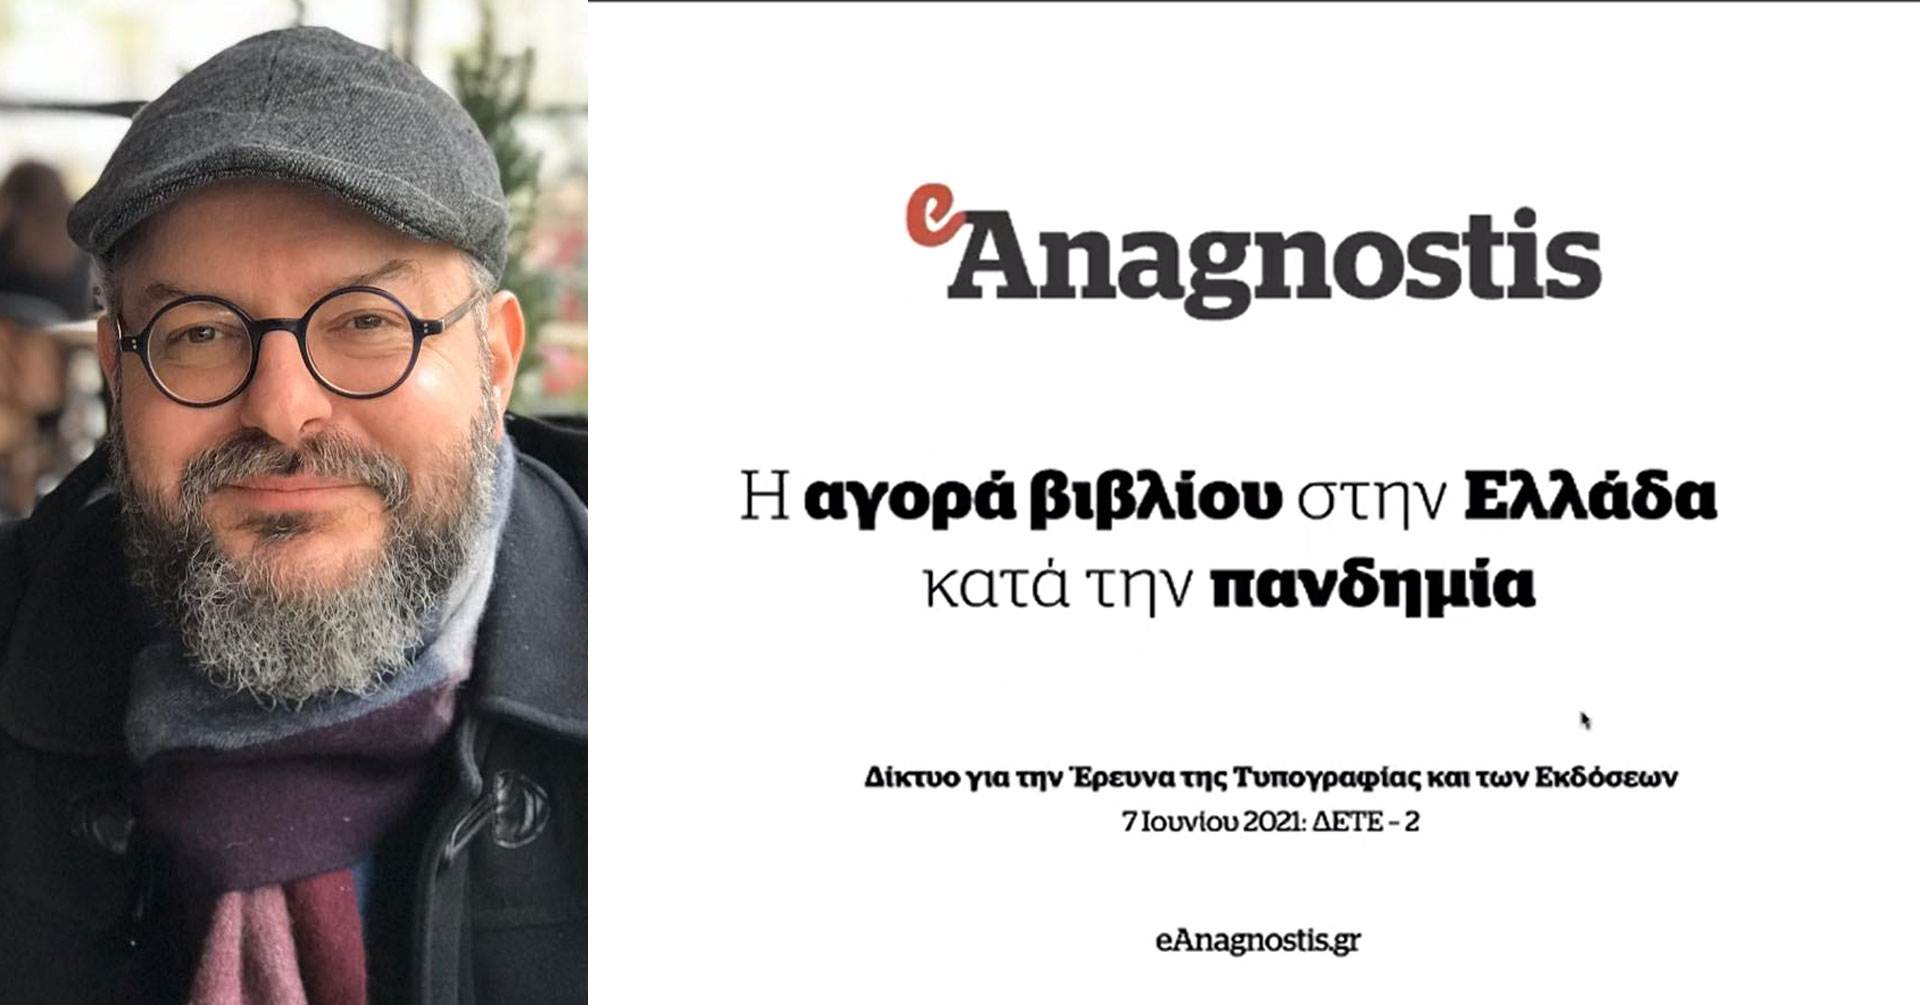 Μιχάλης Καλαμαράς, «Η αγορά βιβλίου στην Ελλάδα κατά την πανδημία»